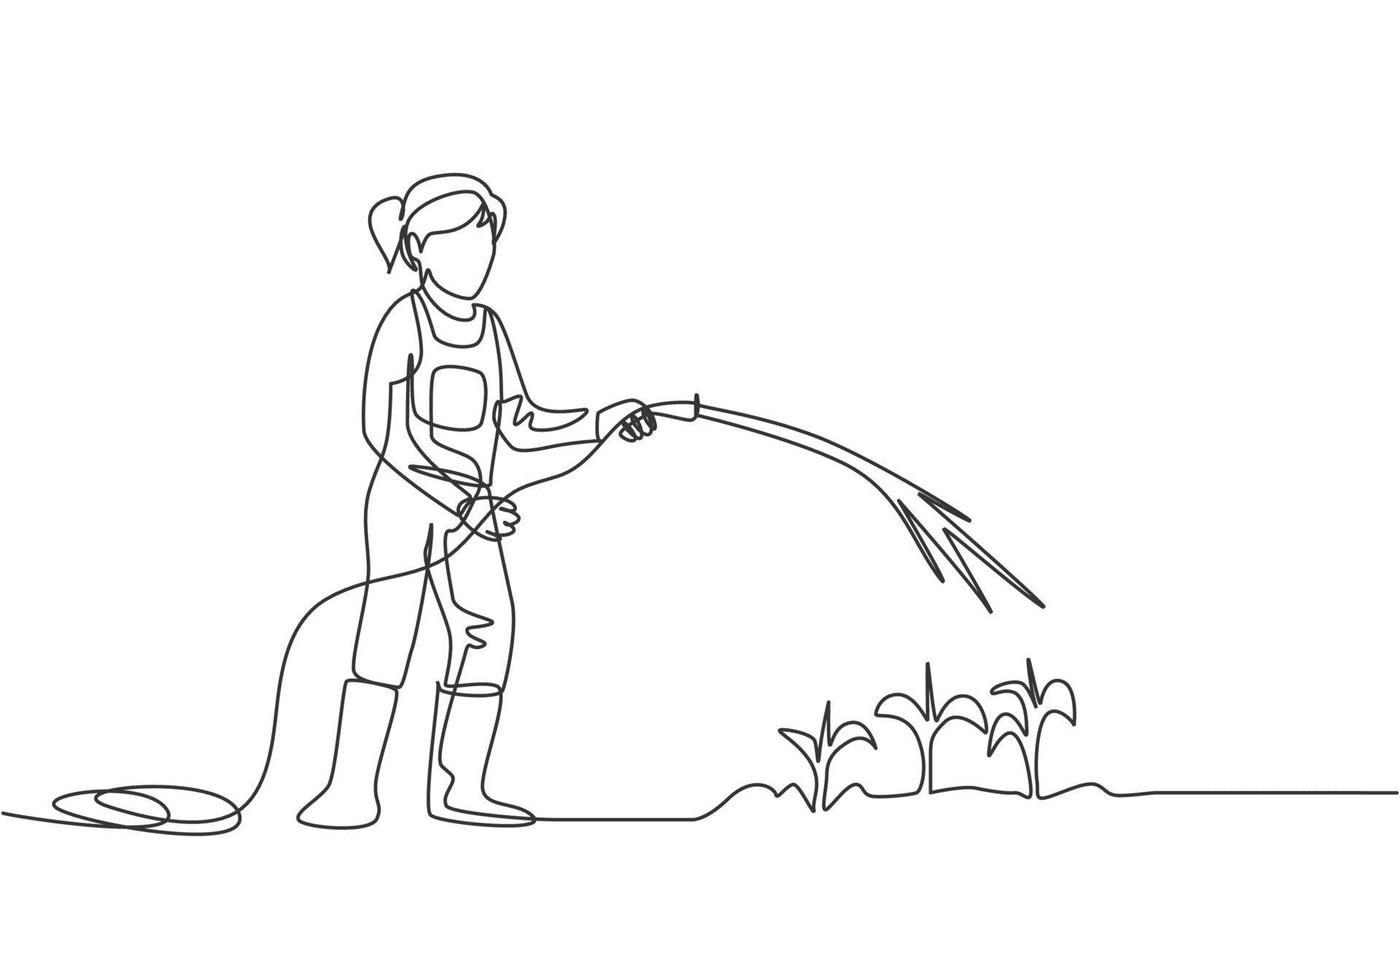 disegno continuo di una linea giovane contadina in piedi sul campo della fattoria mentre innaffia le piante usando un tubo. concetto di attività di piantagione dell'agricoltore. illustrazione grafica vettoriale di disegno a linea singola.